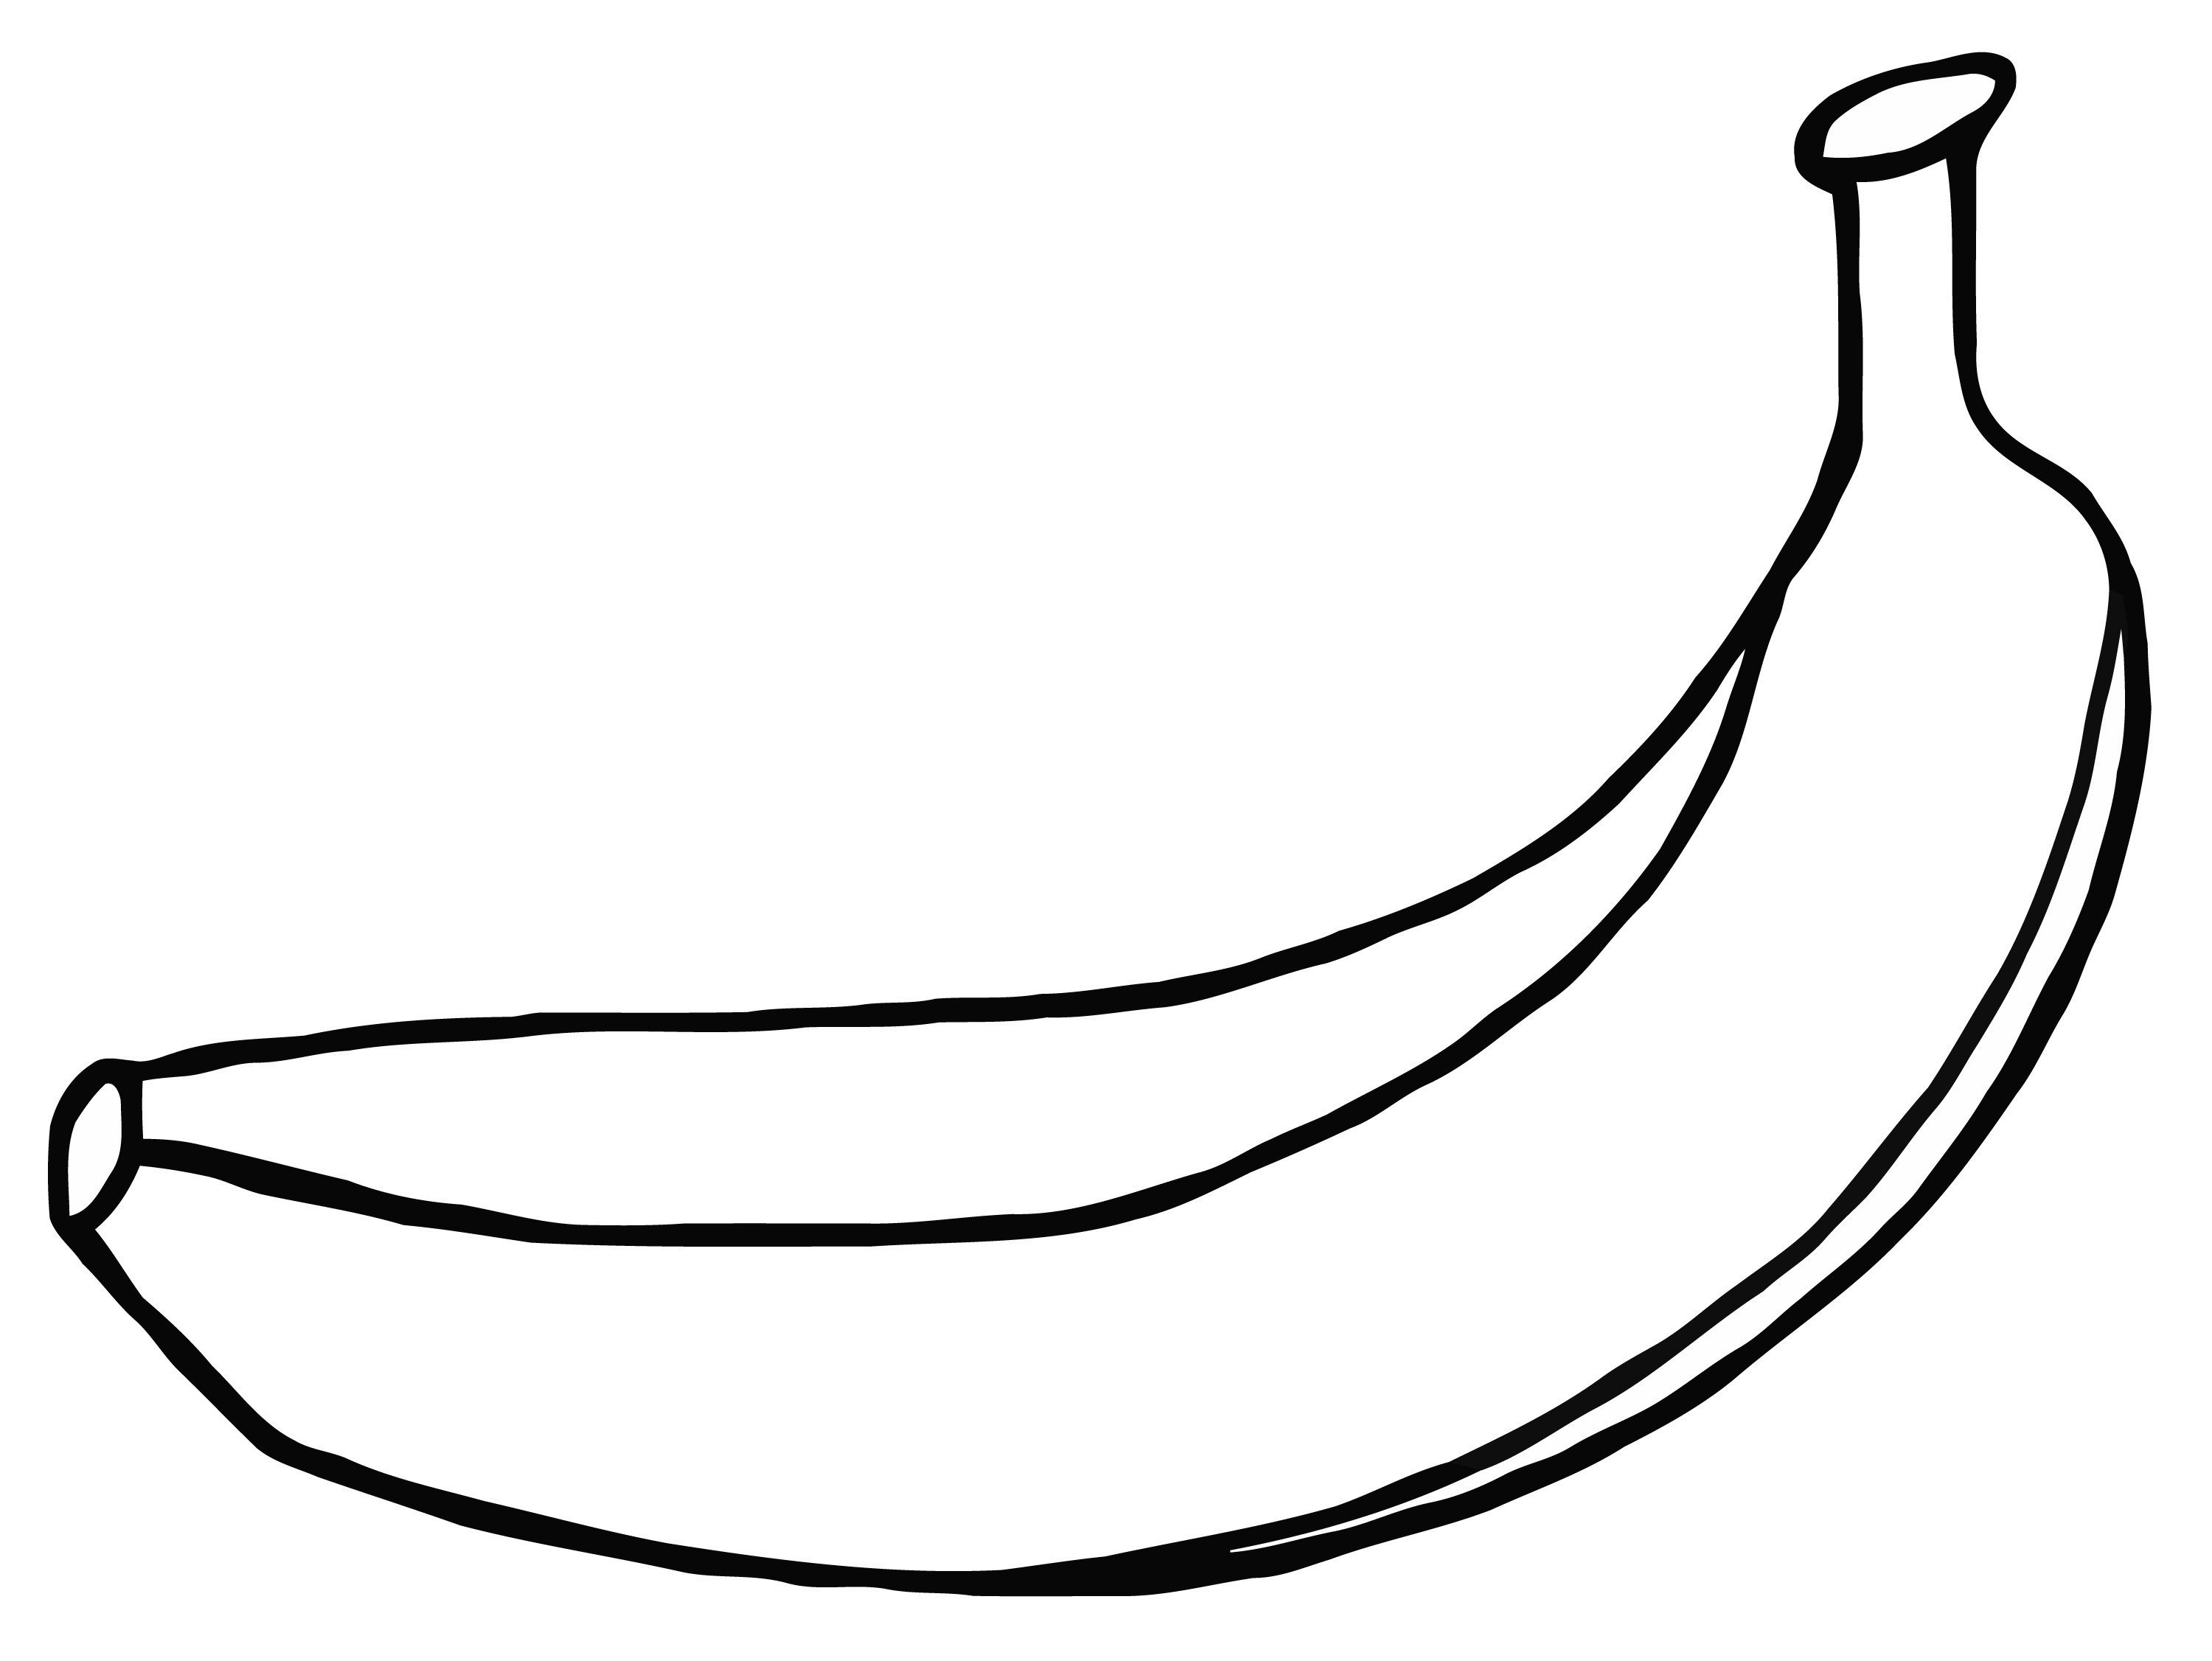 Banana Drawing Realistic